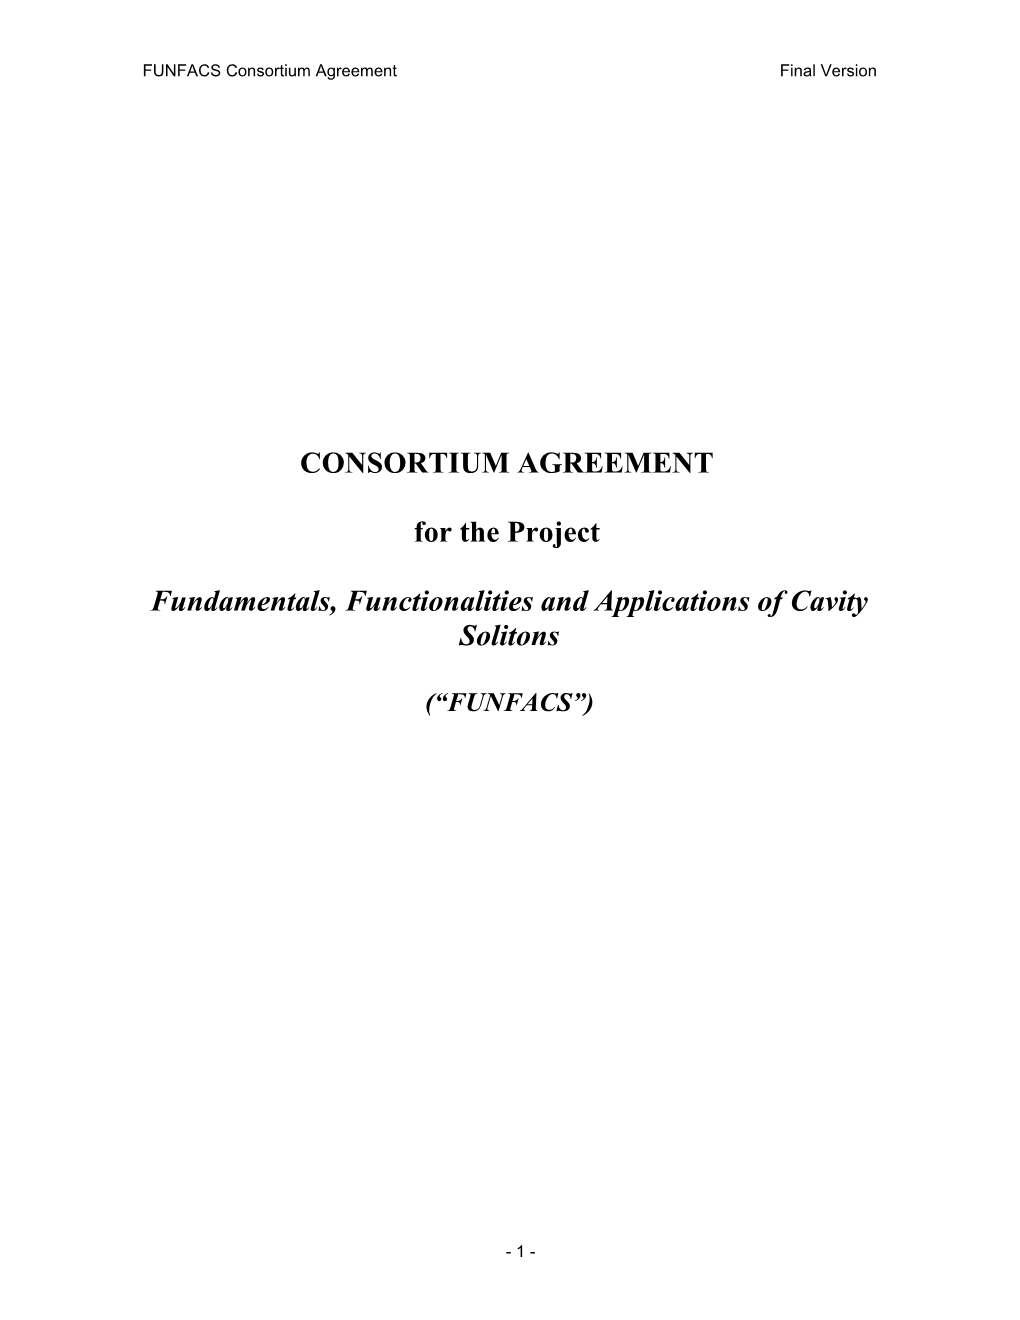 FUNFACS Consortium Agreement Final Version